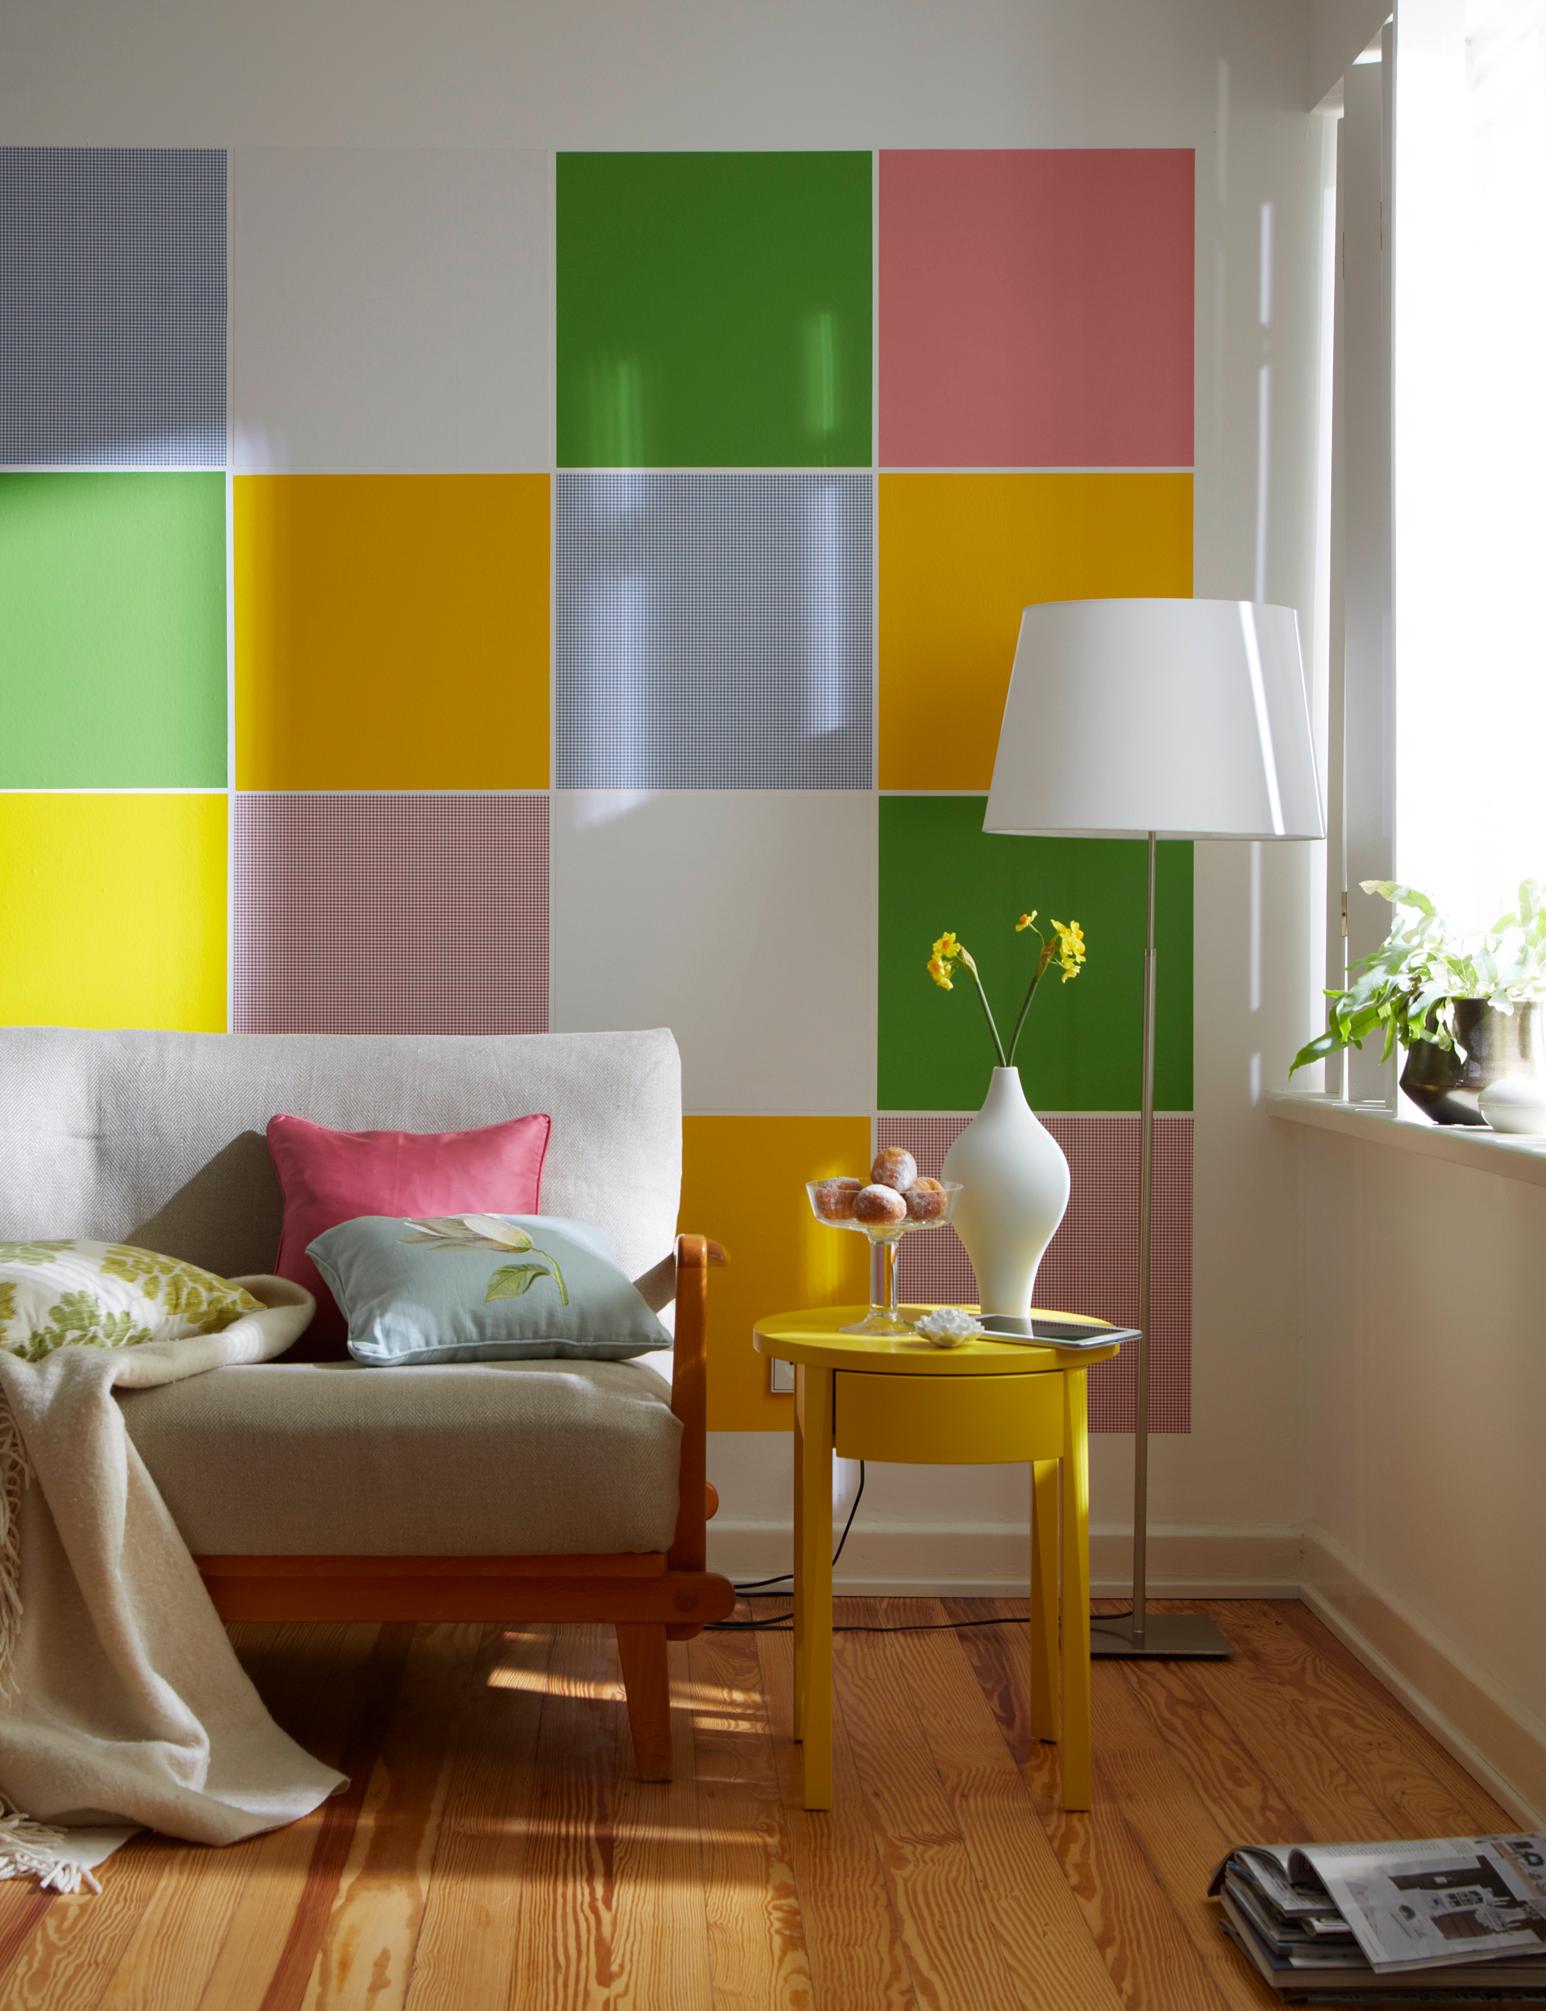 Wände mit Komplementärfarben gestalten #beistelltisch #wandfarbe #wandgestaltung #stehlampe #lampe #designwand #klebefolie ©Hornschuch/d-c-fix